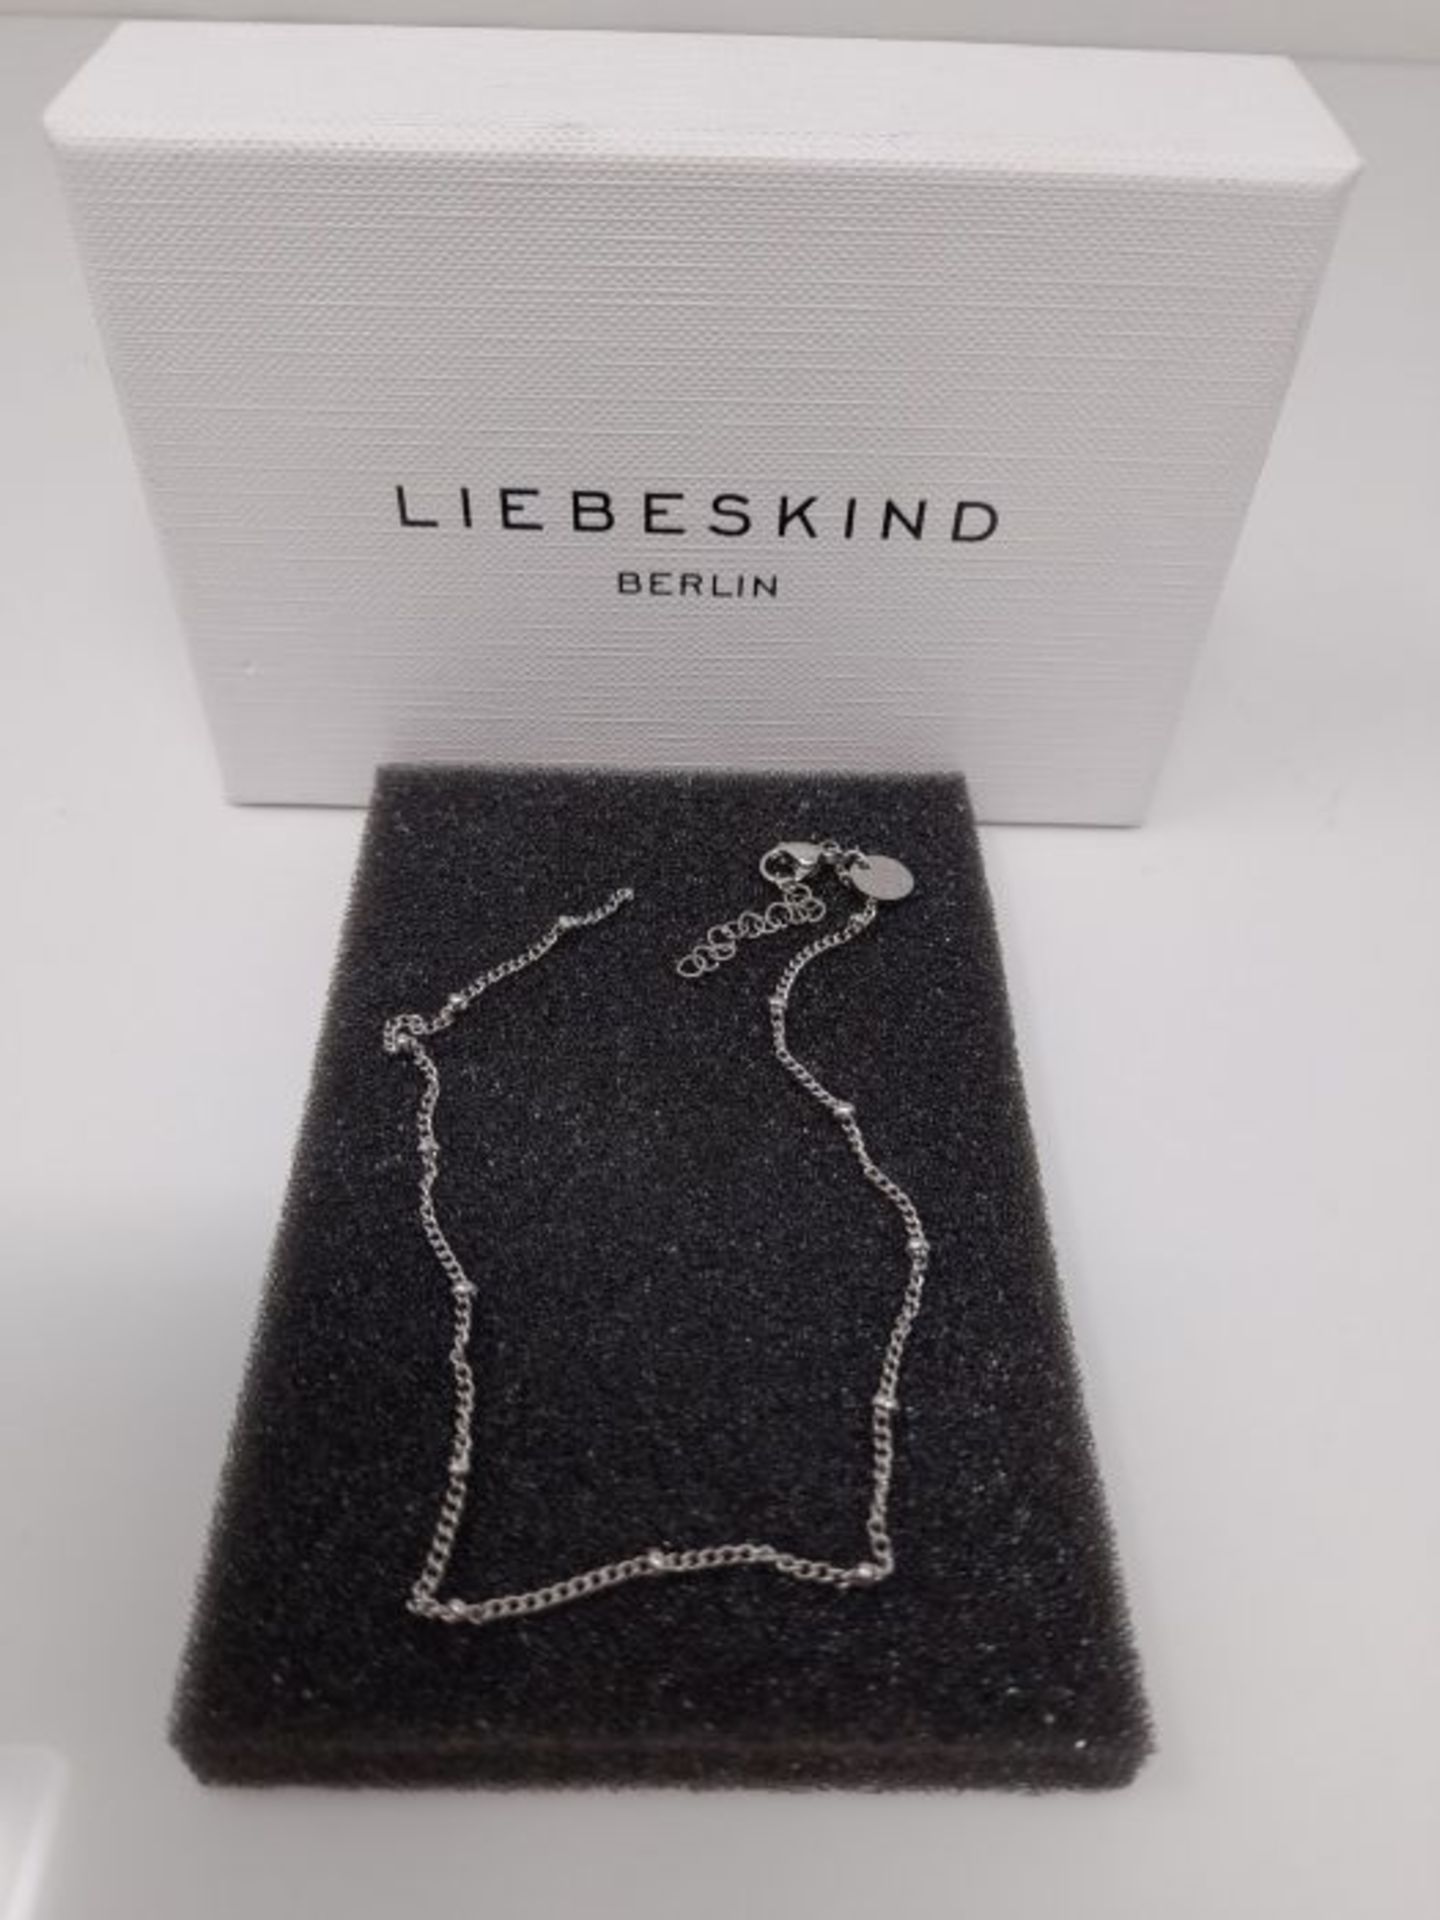 [CRACKED] Liebeskind Berlin filigranes Anklet mit Logoanhänger aus Edelstahl LJ-0588- - Image 3 of 3